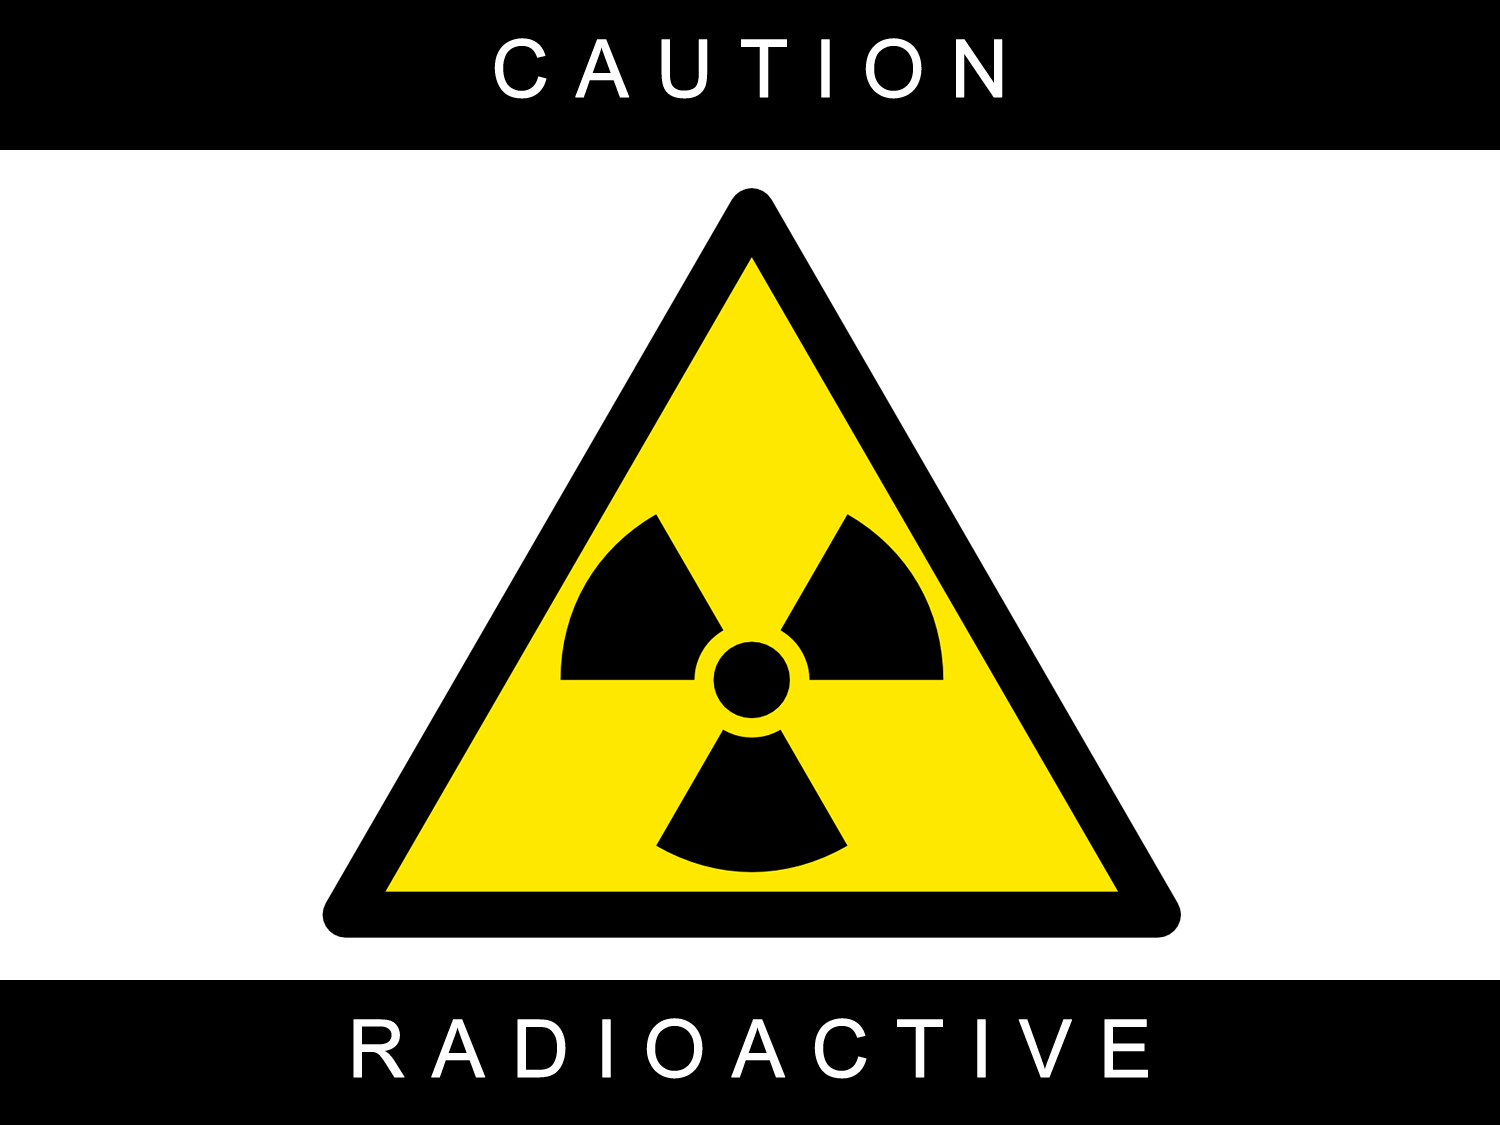 La guerra e il rischio radiazioni. Una psicosi ingiustificata